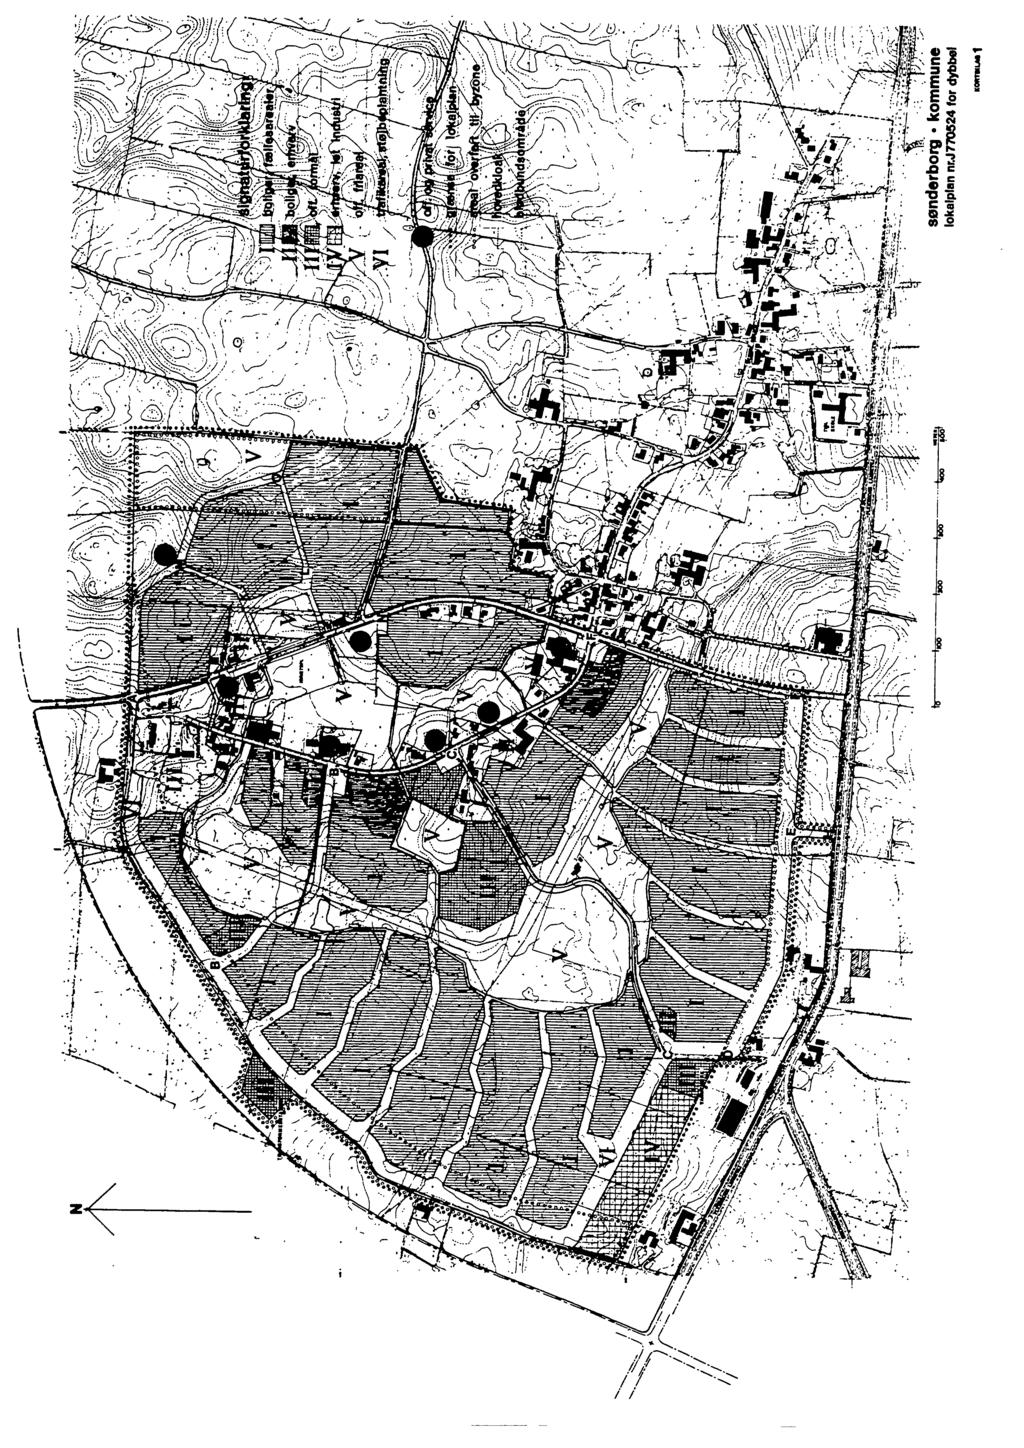 Redegørelse III Udsnit af kortbilaget for lokalplan J 77 05 24. Det nye lokalplanområde er markeret med rødt. I lokalplanen fra 1977 for det nye Dybbøl er området udlagt til offentligt friareal inkl.